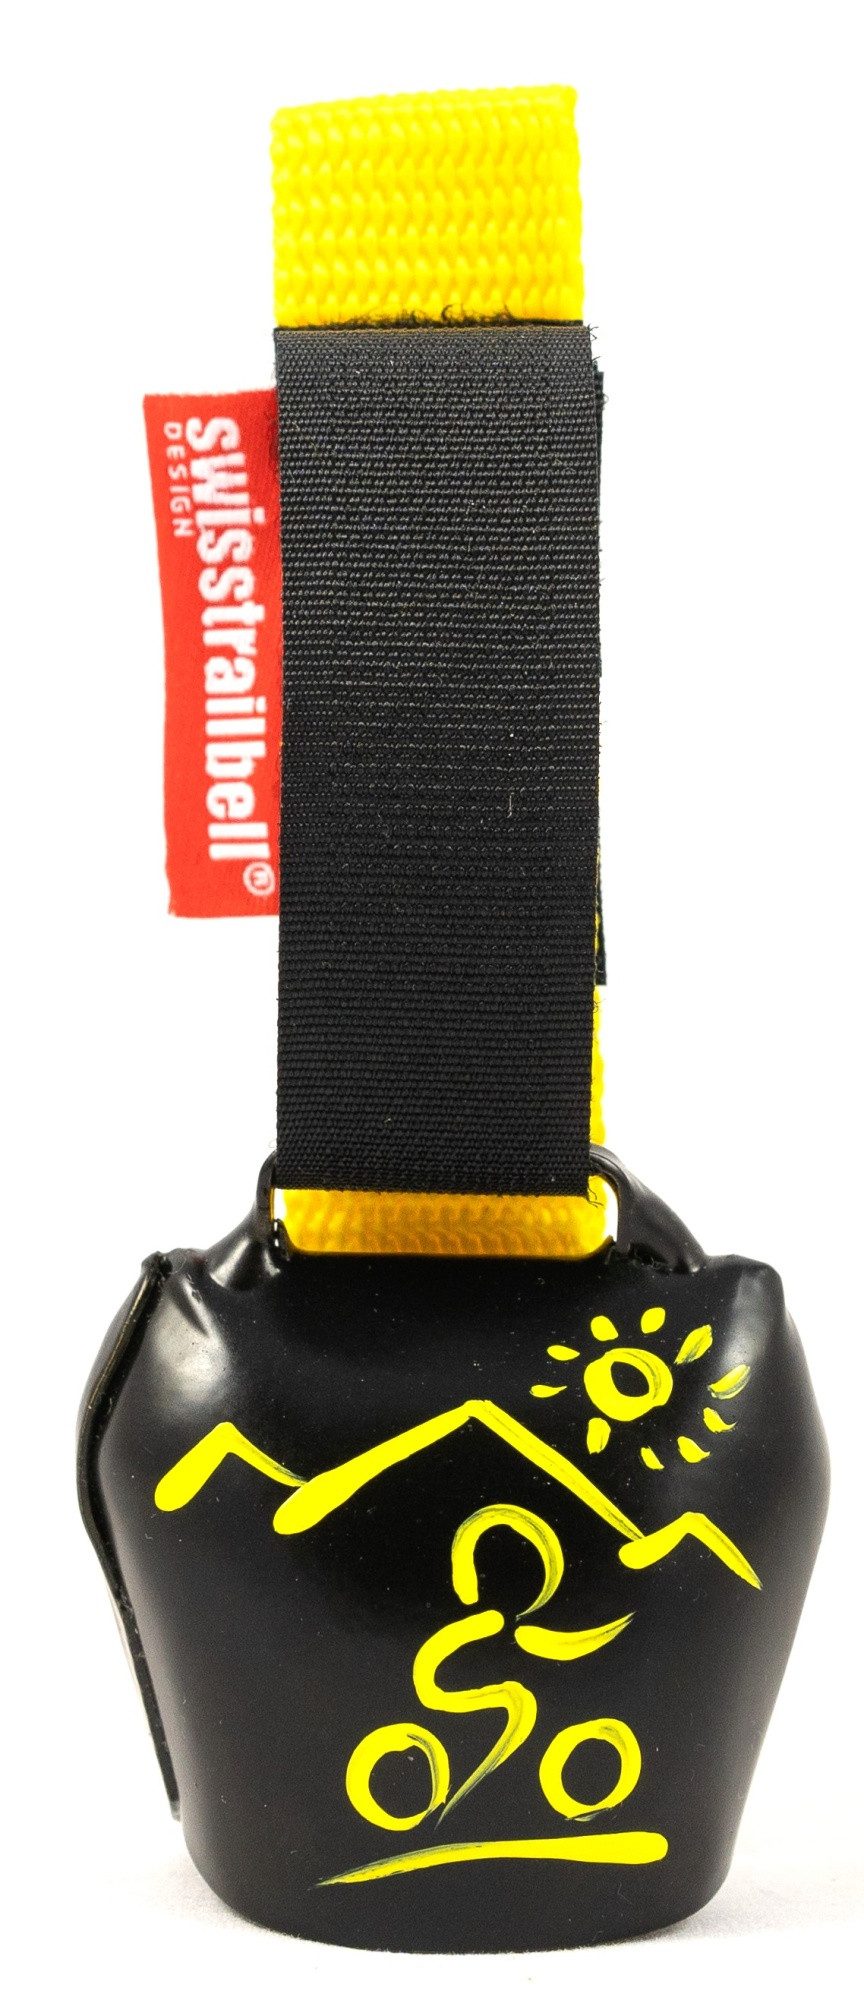 swisstrailbell Fahrradklingel Black mit gelbem MTB, gelbes Band, Trailbell, Bear Bell